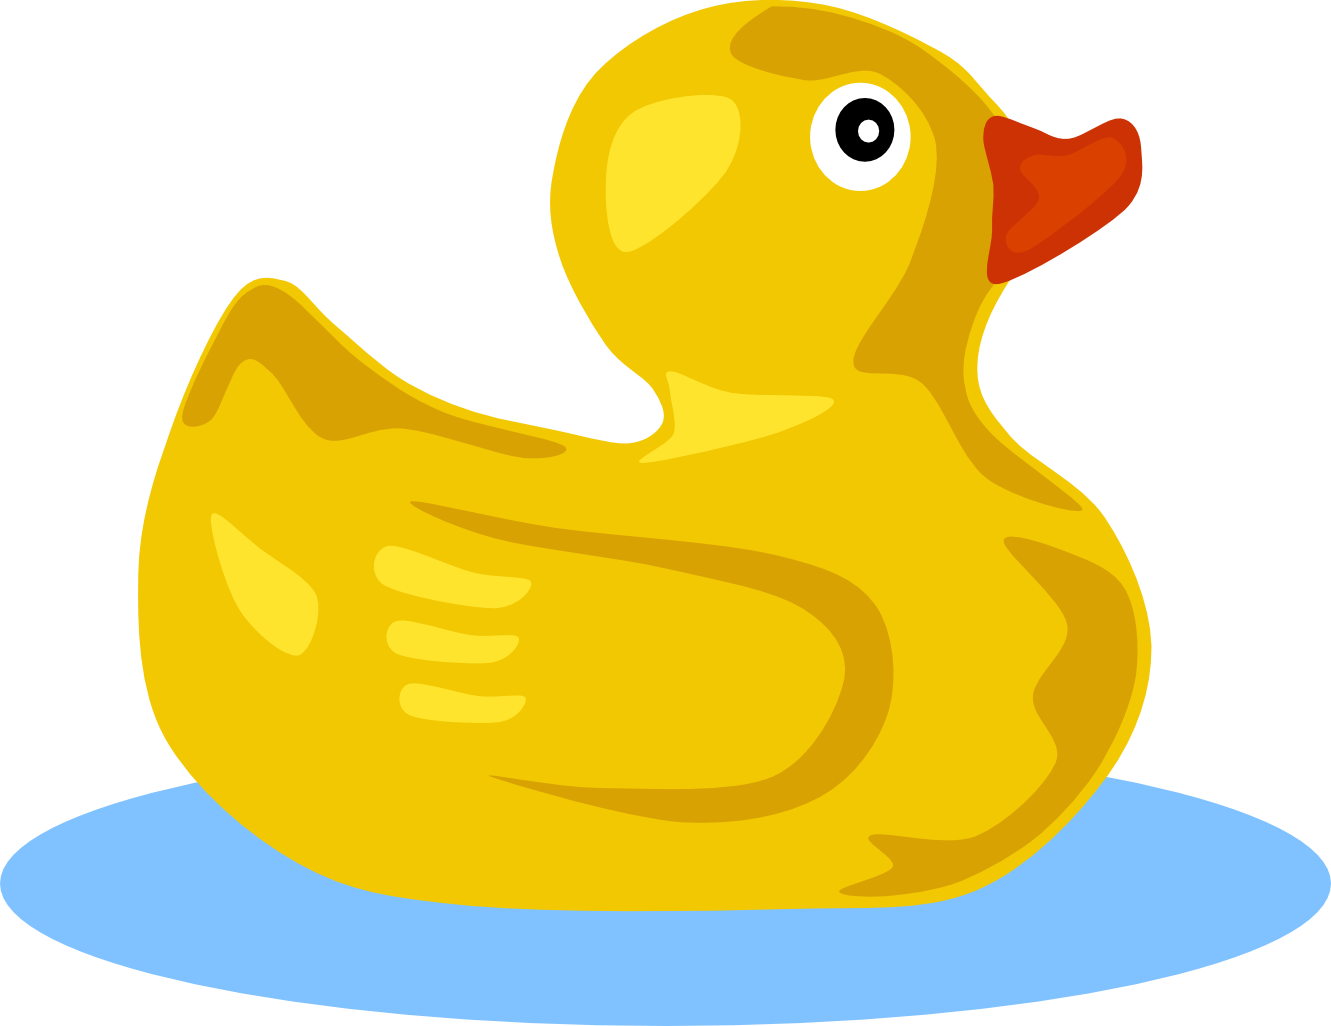 gerald g rubber duck SVG